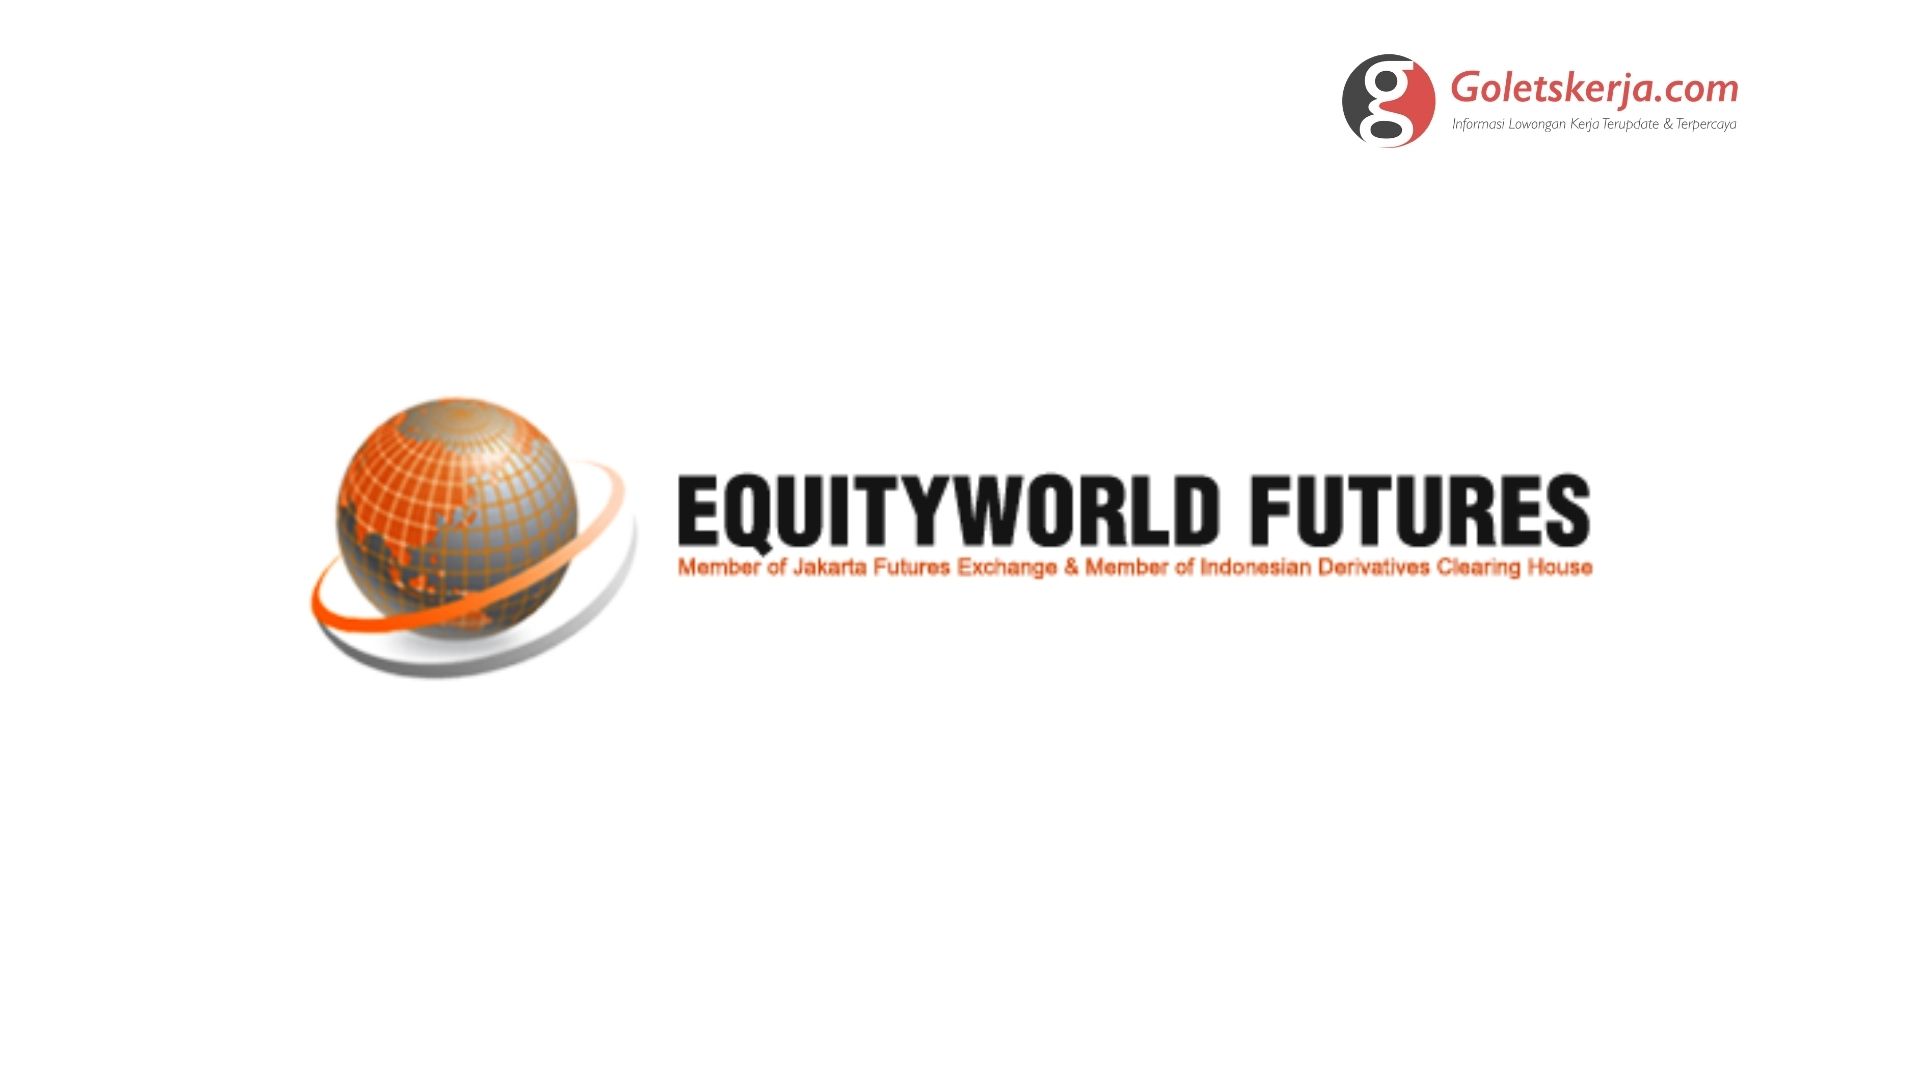 Lowongan Kerja Pt Equityworld Futures Ewf Goletskerja